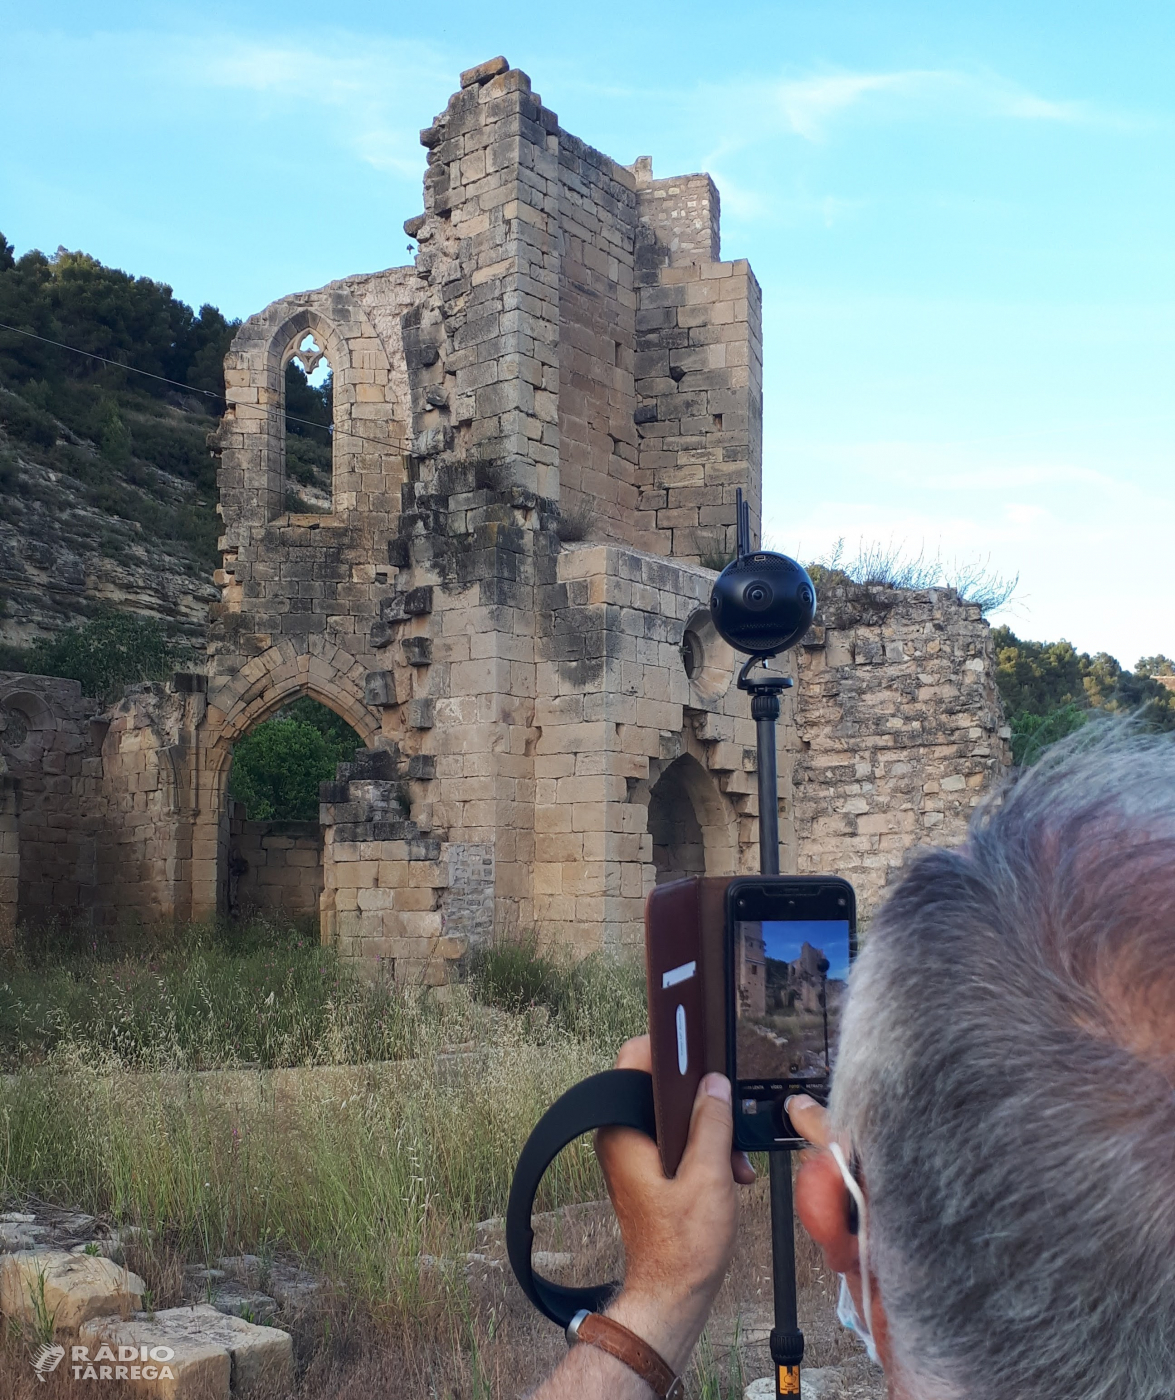 El Patronat de Turisme digitalitza per a la plataforma Google Street view diferents municipis de Lleida, entre ells Guimerà, per potenciar el turisme